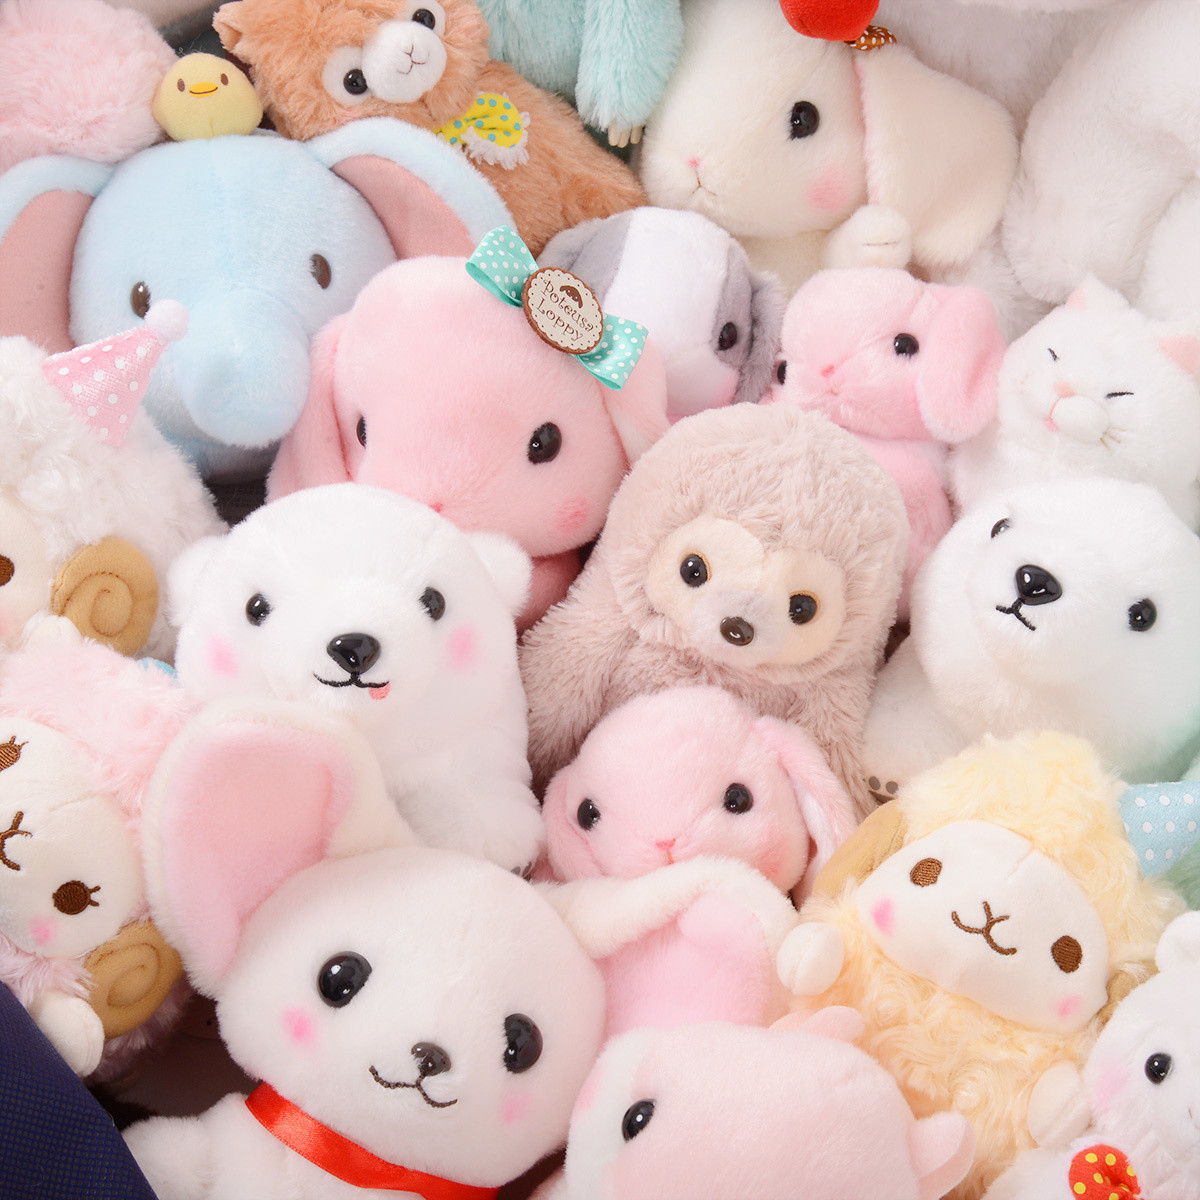 kawaii stuffed animals